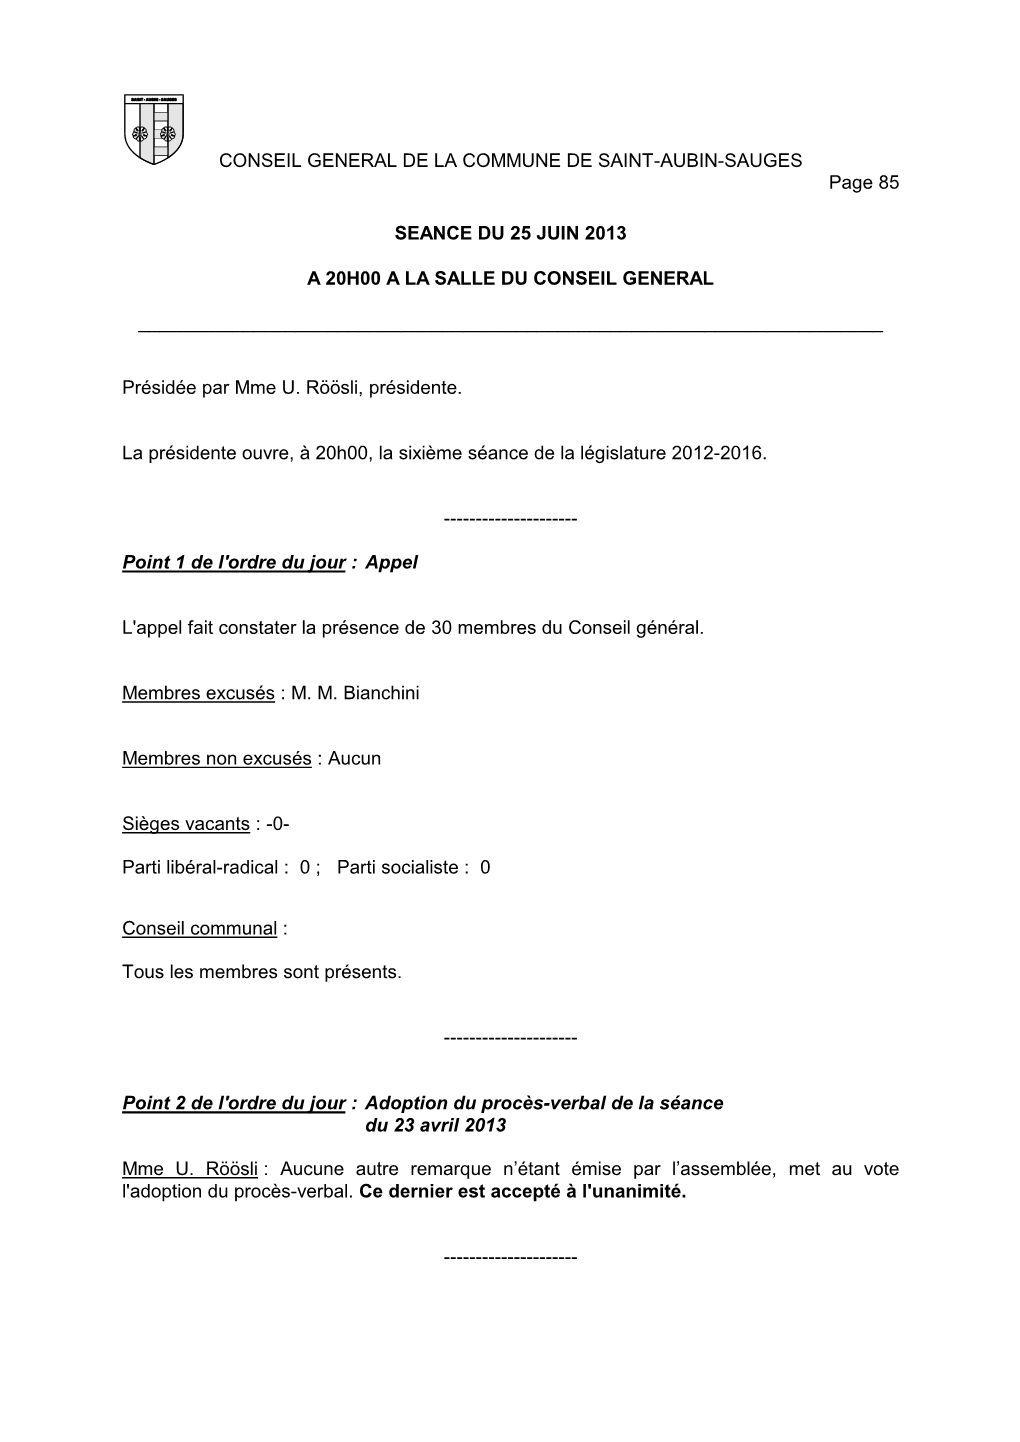 CONSEIL GENERAL DE LA COMMUNE DE SAINT-AUBIN-SAUGES Page 85 SEANCE DU 25 JUIN 2013 a 20H00 a LA SALLE DU CONSEIL GENERAL ___